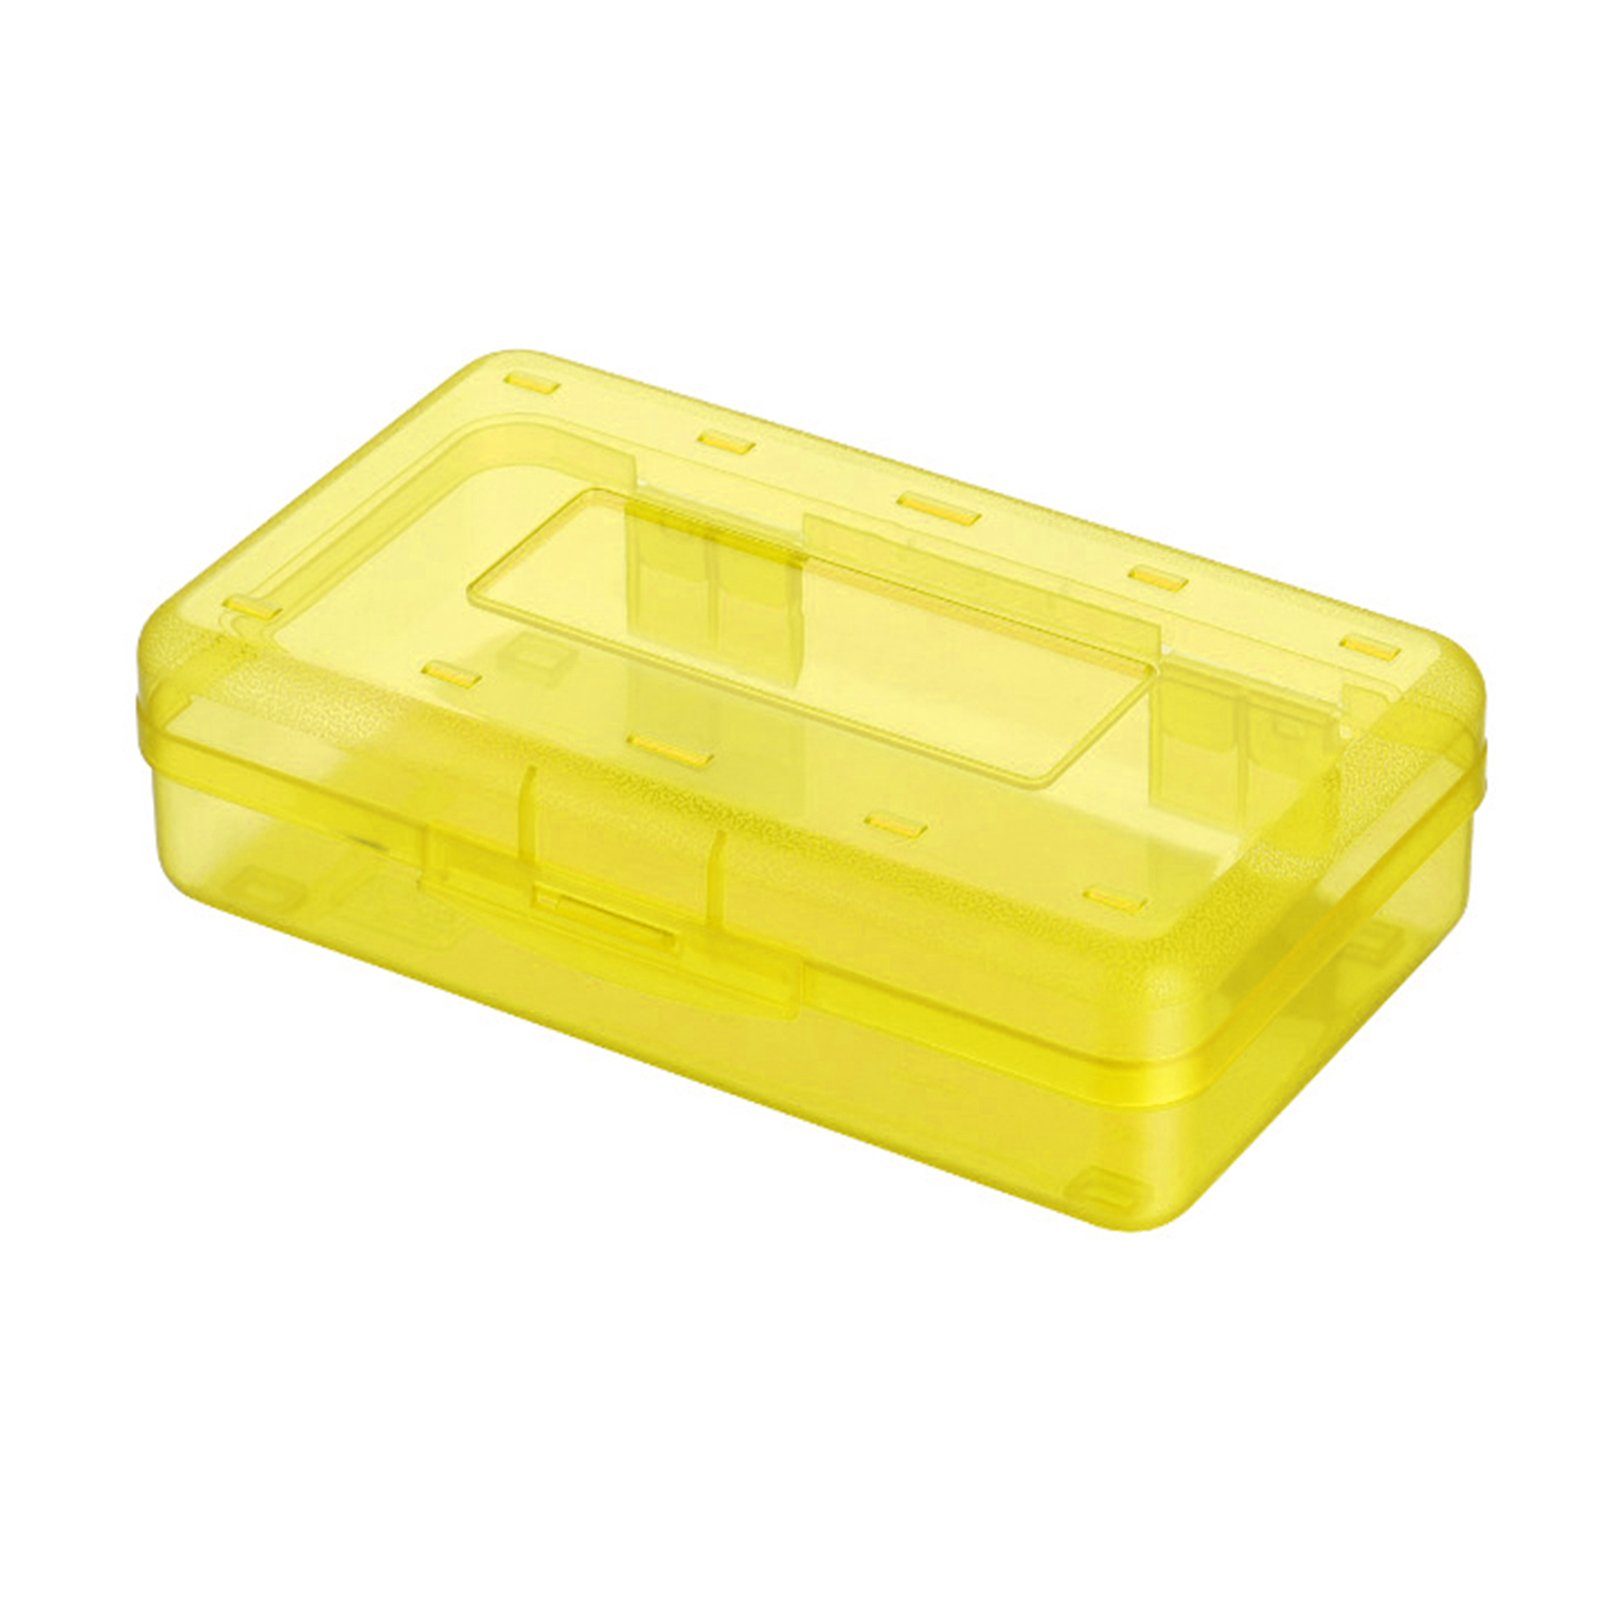 Bleistifttasche Bleistiftbox, Schöne Federtasche yellow Blusmart Tragbare Transparente/bunte Federtasche,